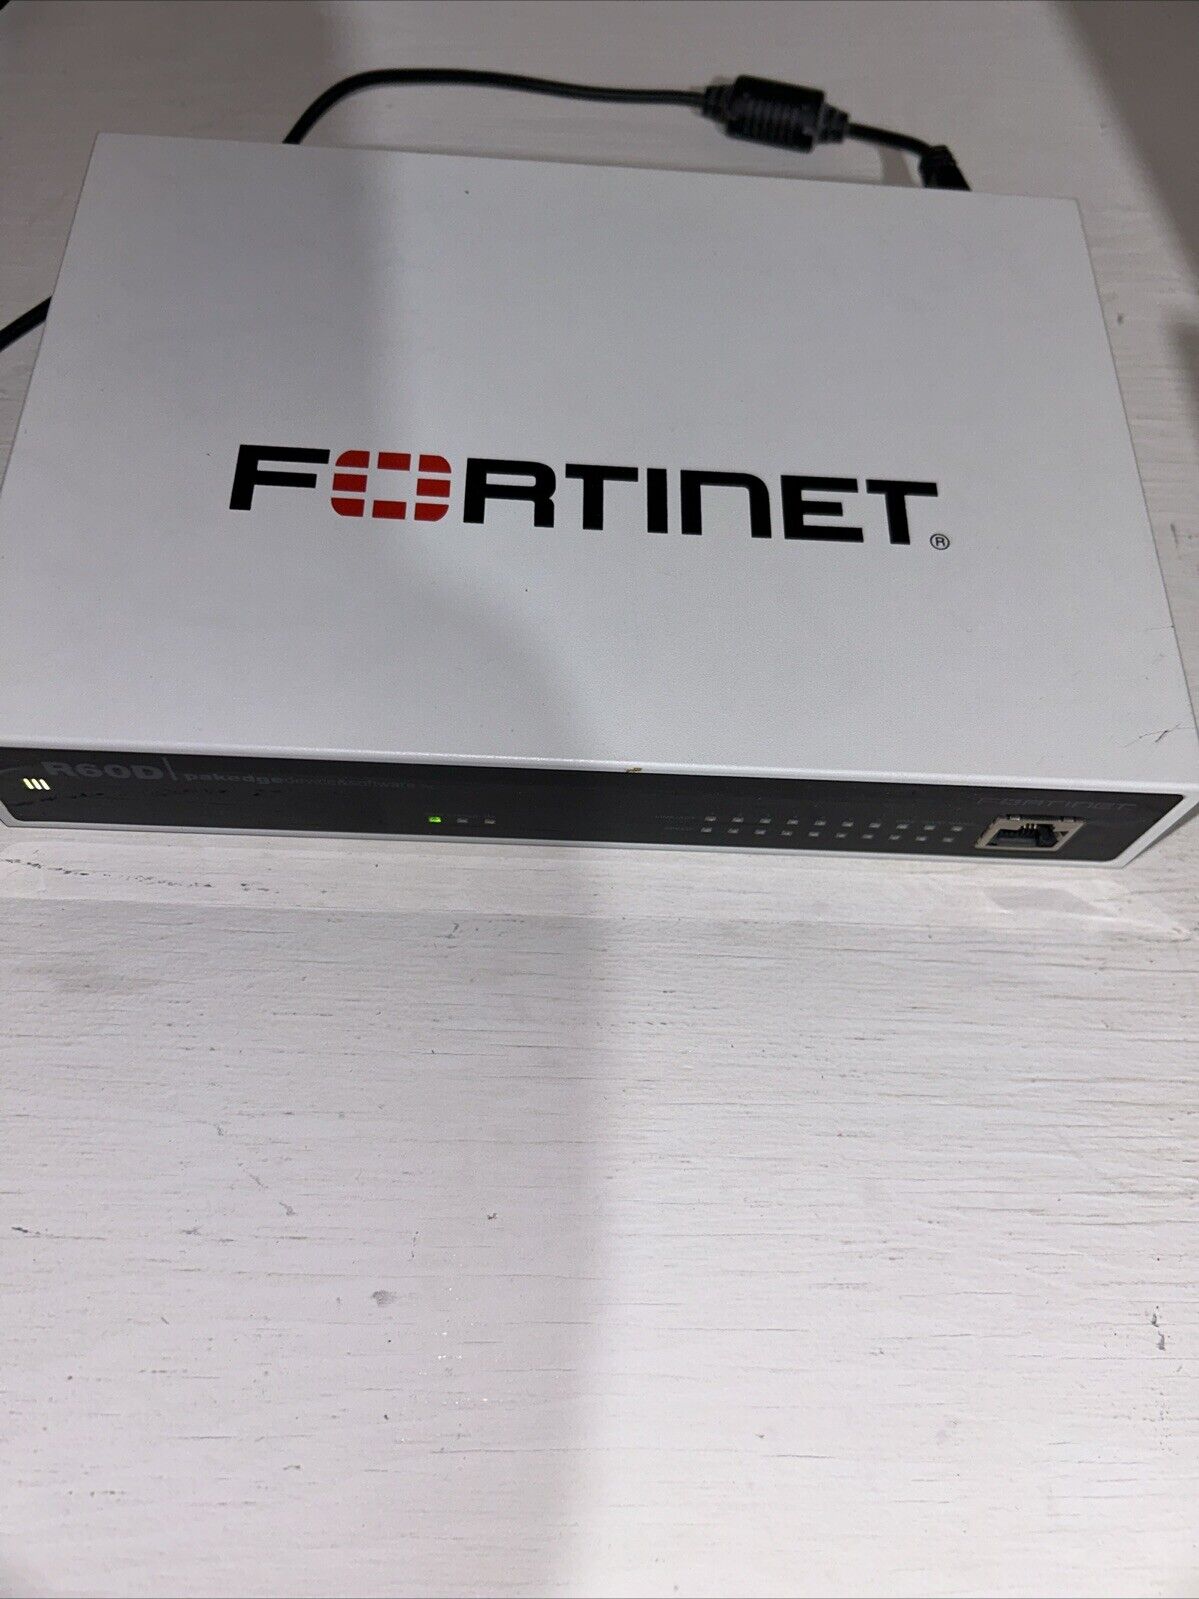 Fortinet FortiGate-60D FG-60D Network Firewall